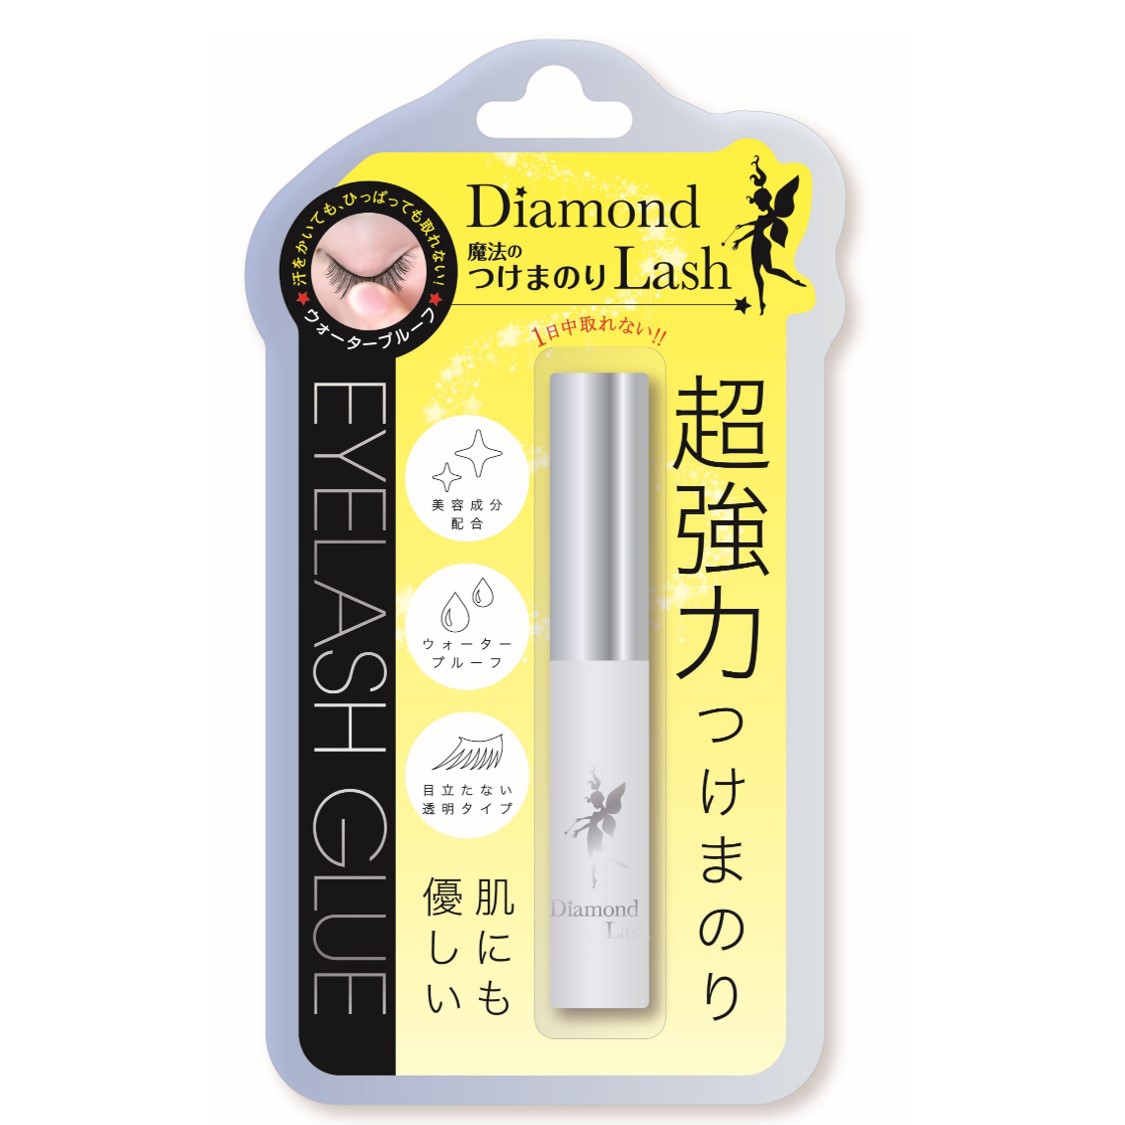 Diamond Lash(ダイヤモンドラッシュ) アイラッシュグルーの商品画像1 